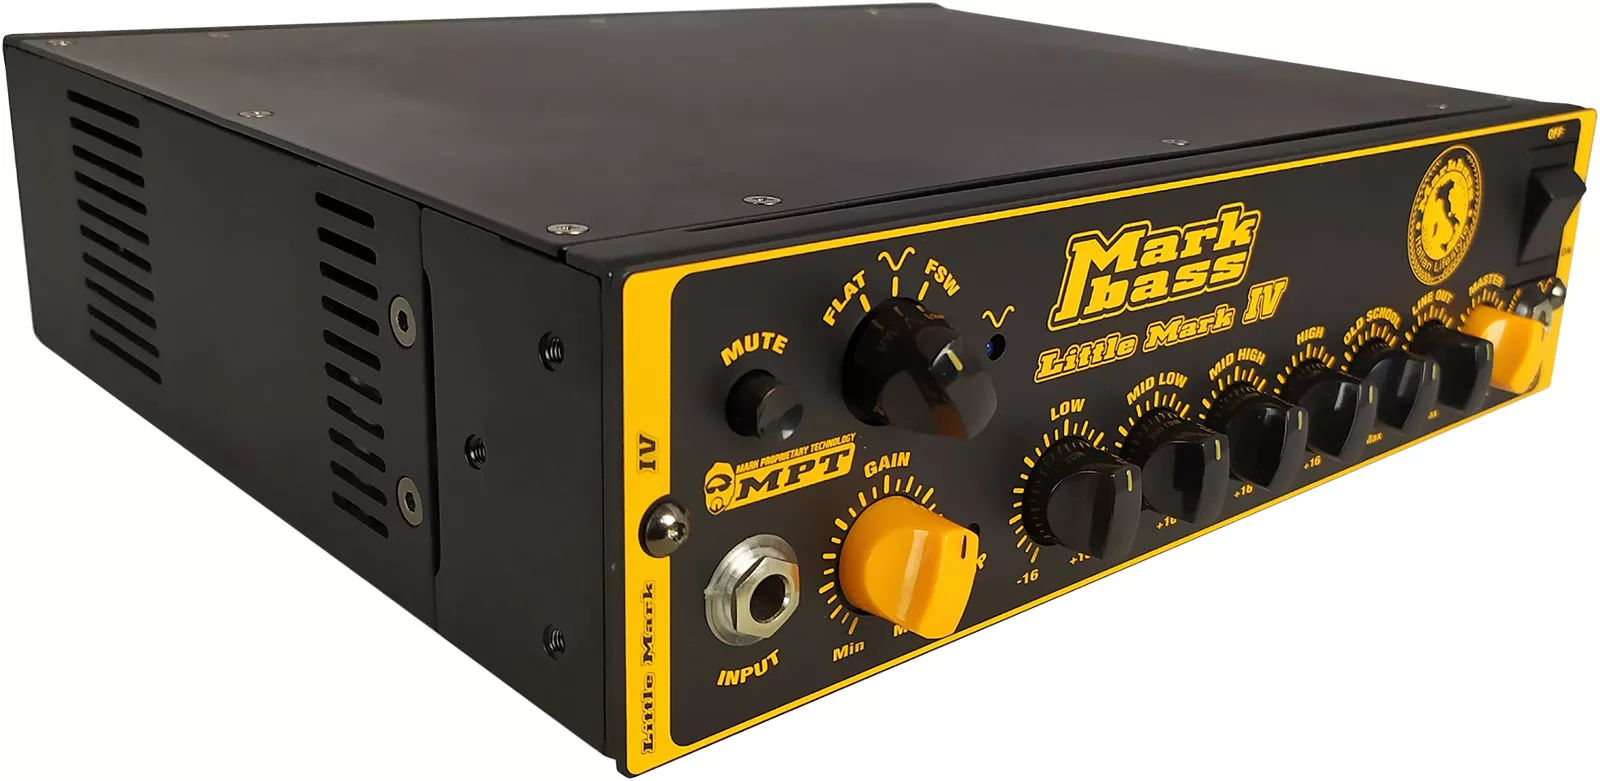 Markbass Little Mark IV 500 Bass amp head